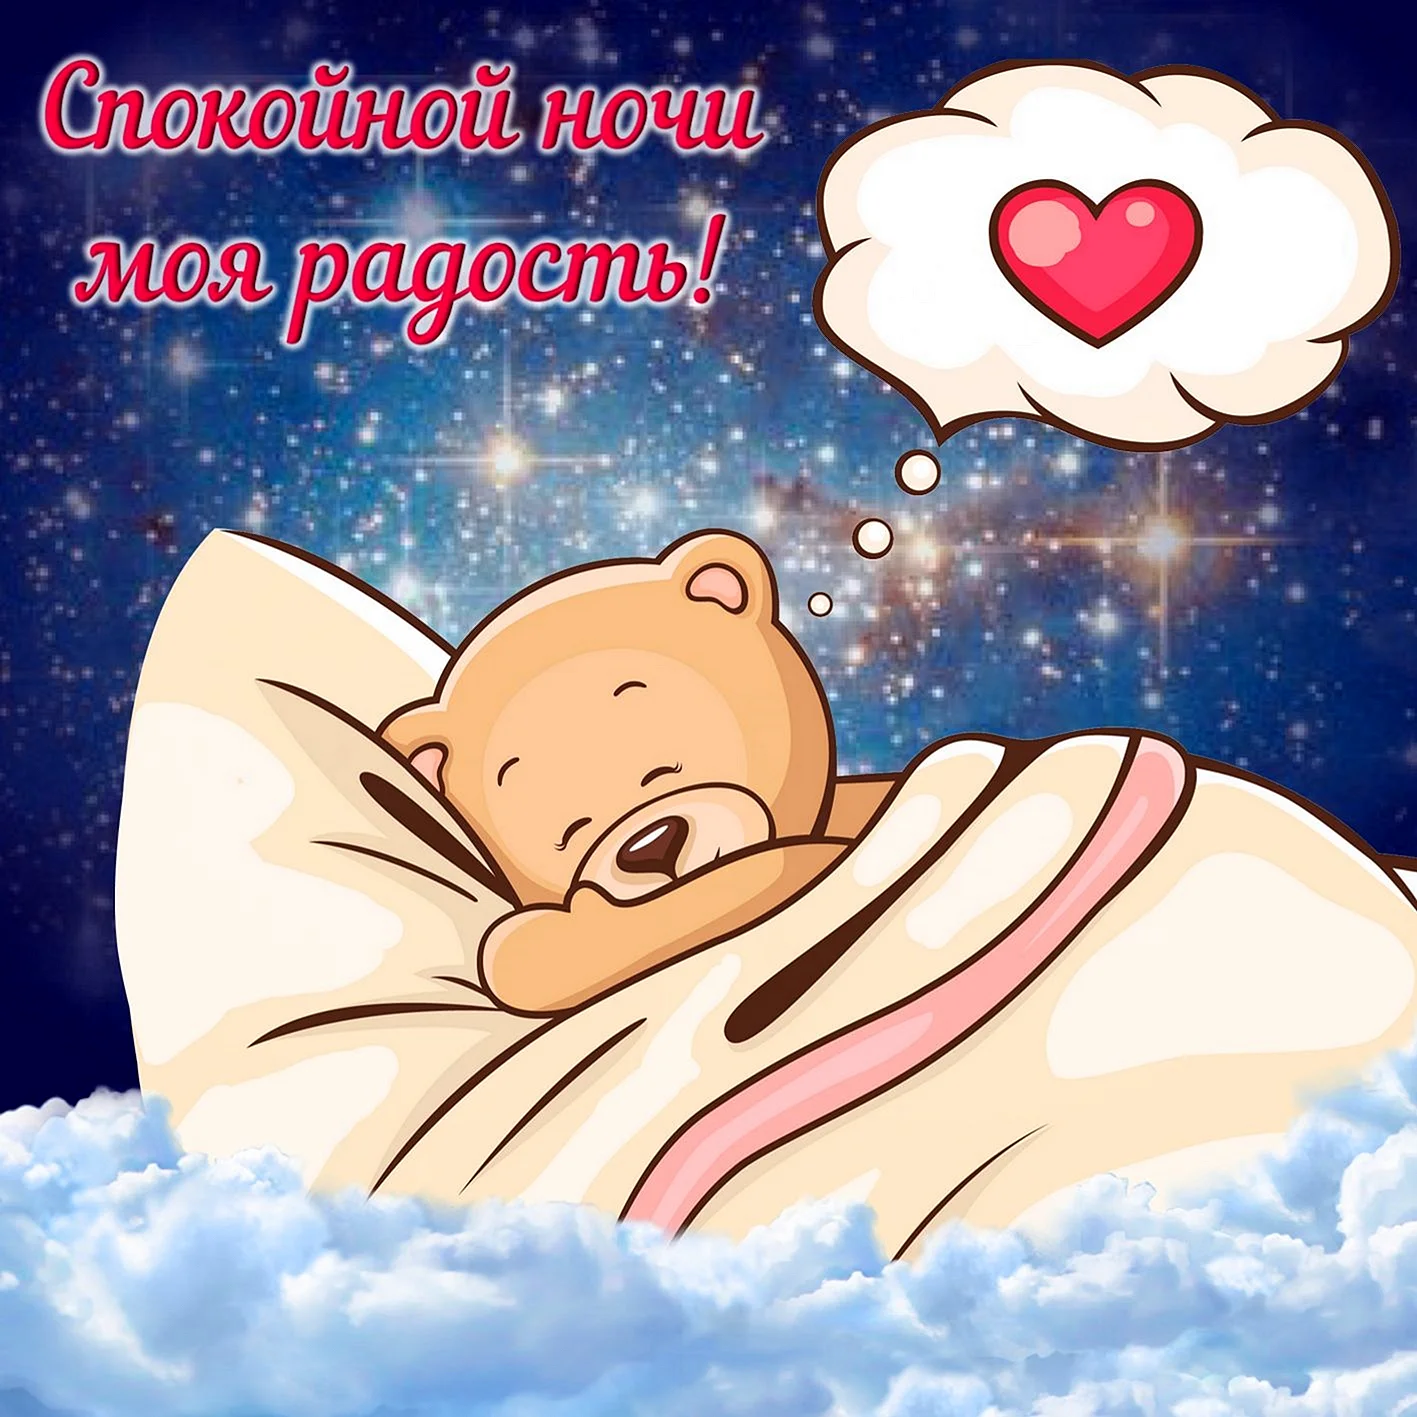 Спокойной ночи сладких снов